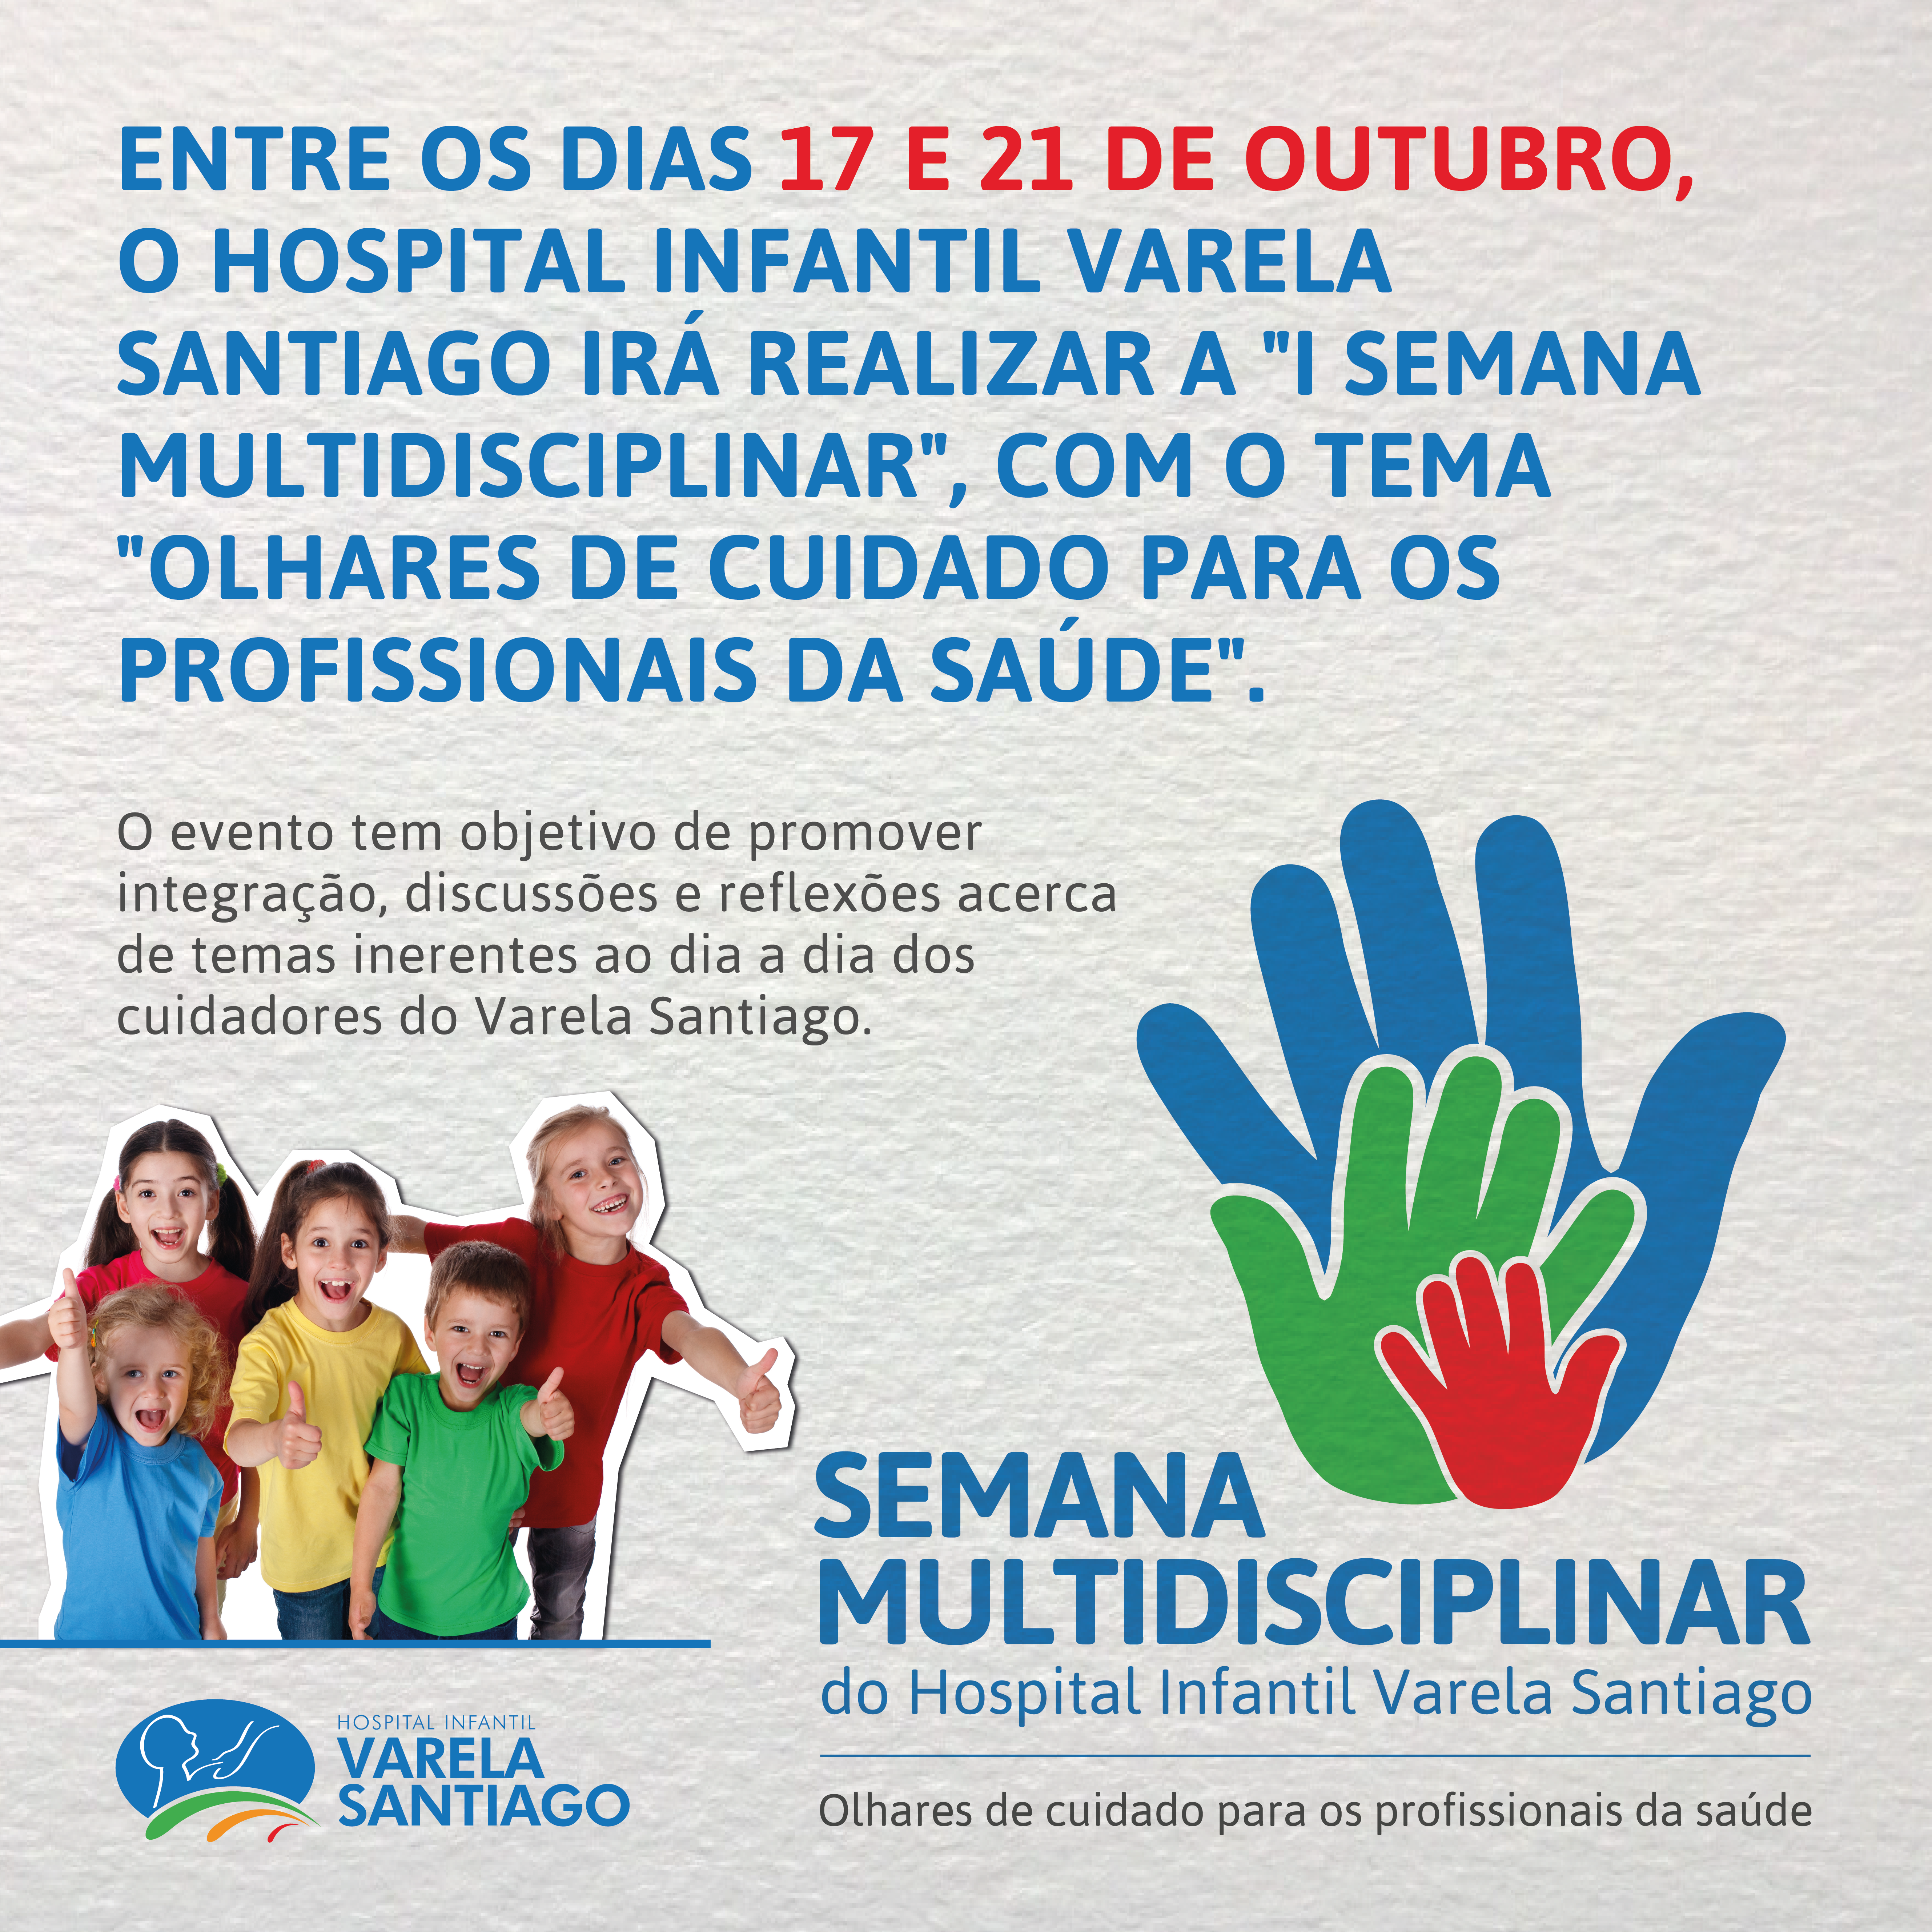 Semana Multidisciplinar do Hospital Infantil Varela Santiago: “Olhares de Cuidado para os profissionais da saúde”.